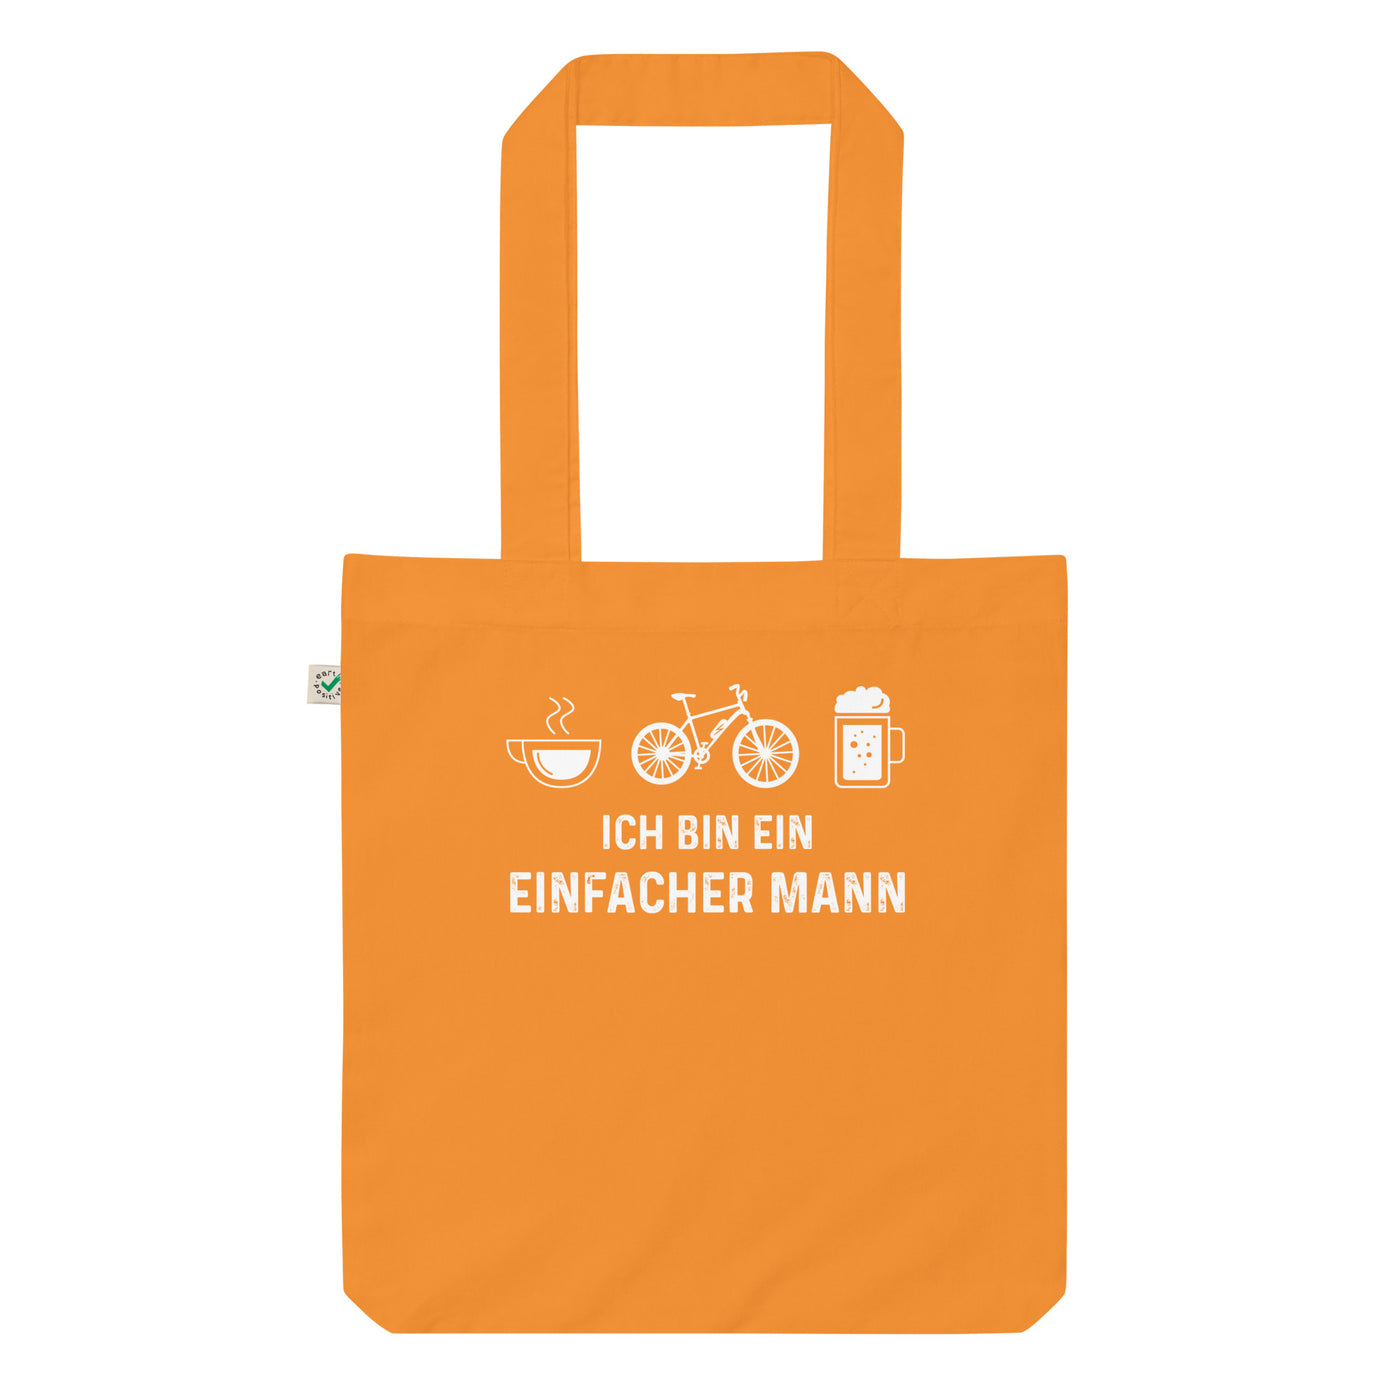 Ich Bin Ein Einfacher Mann - Organic Einkaufstasche e-bike Cinnamon